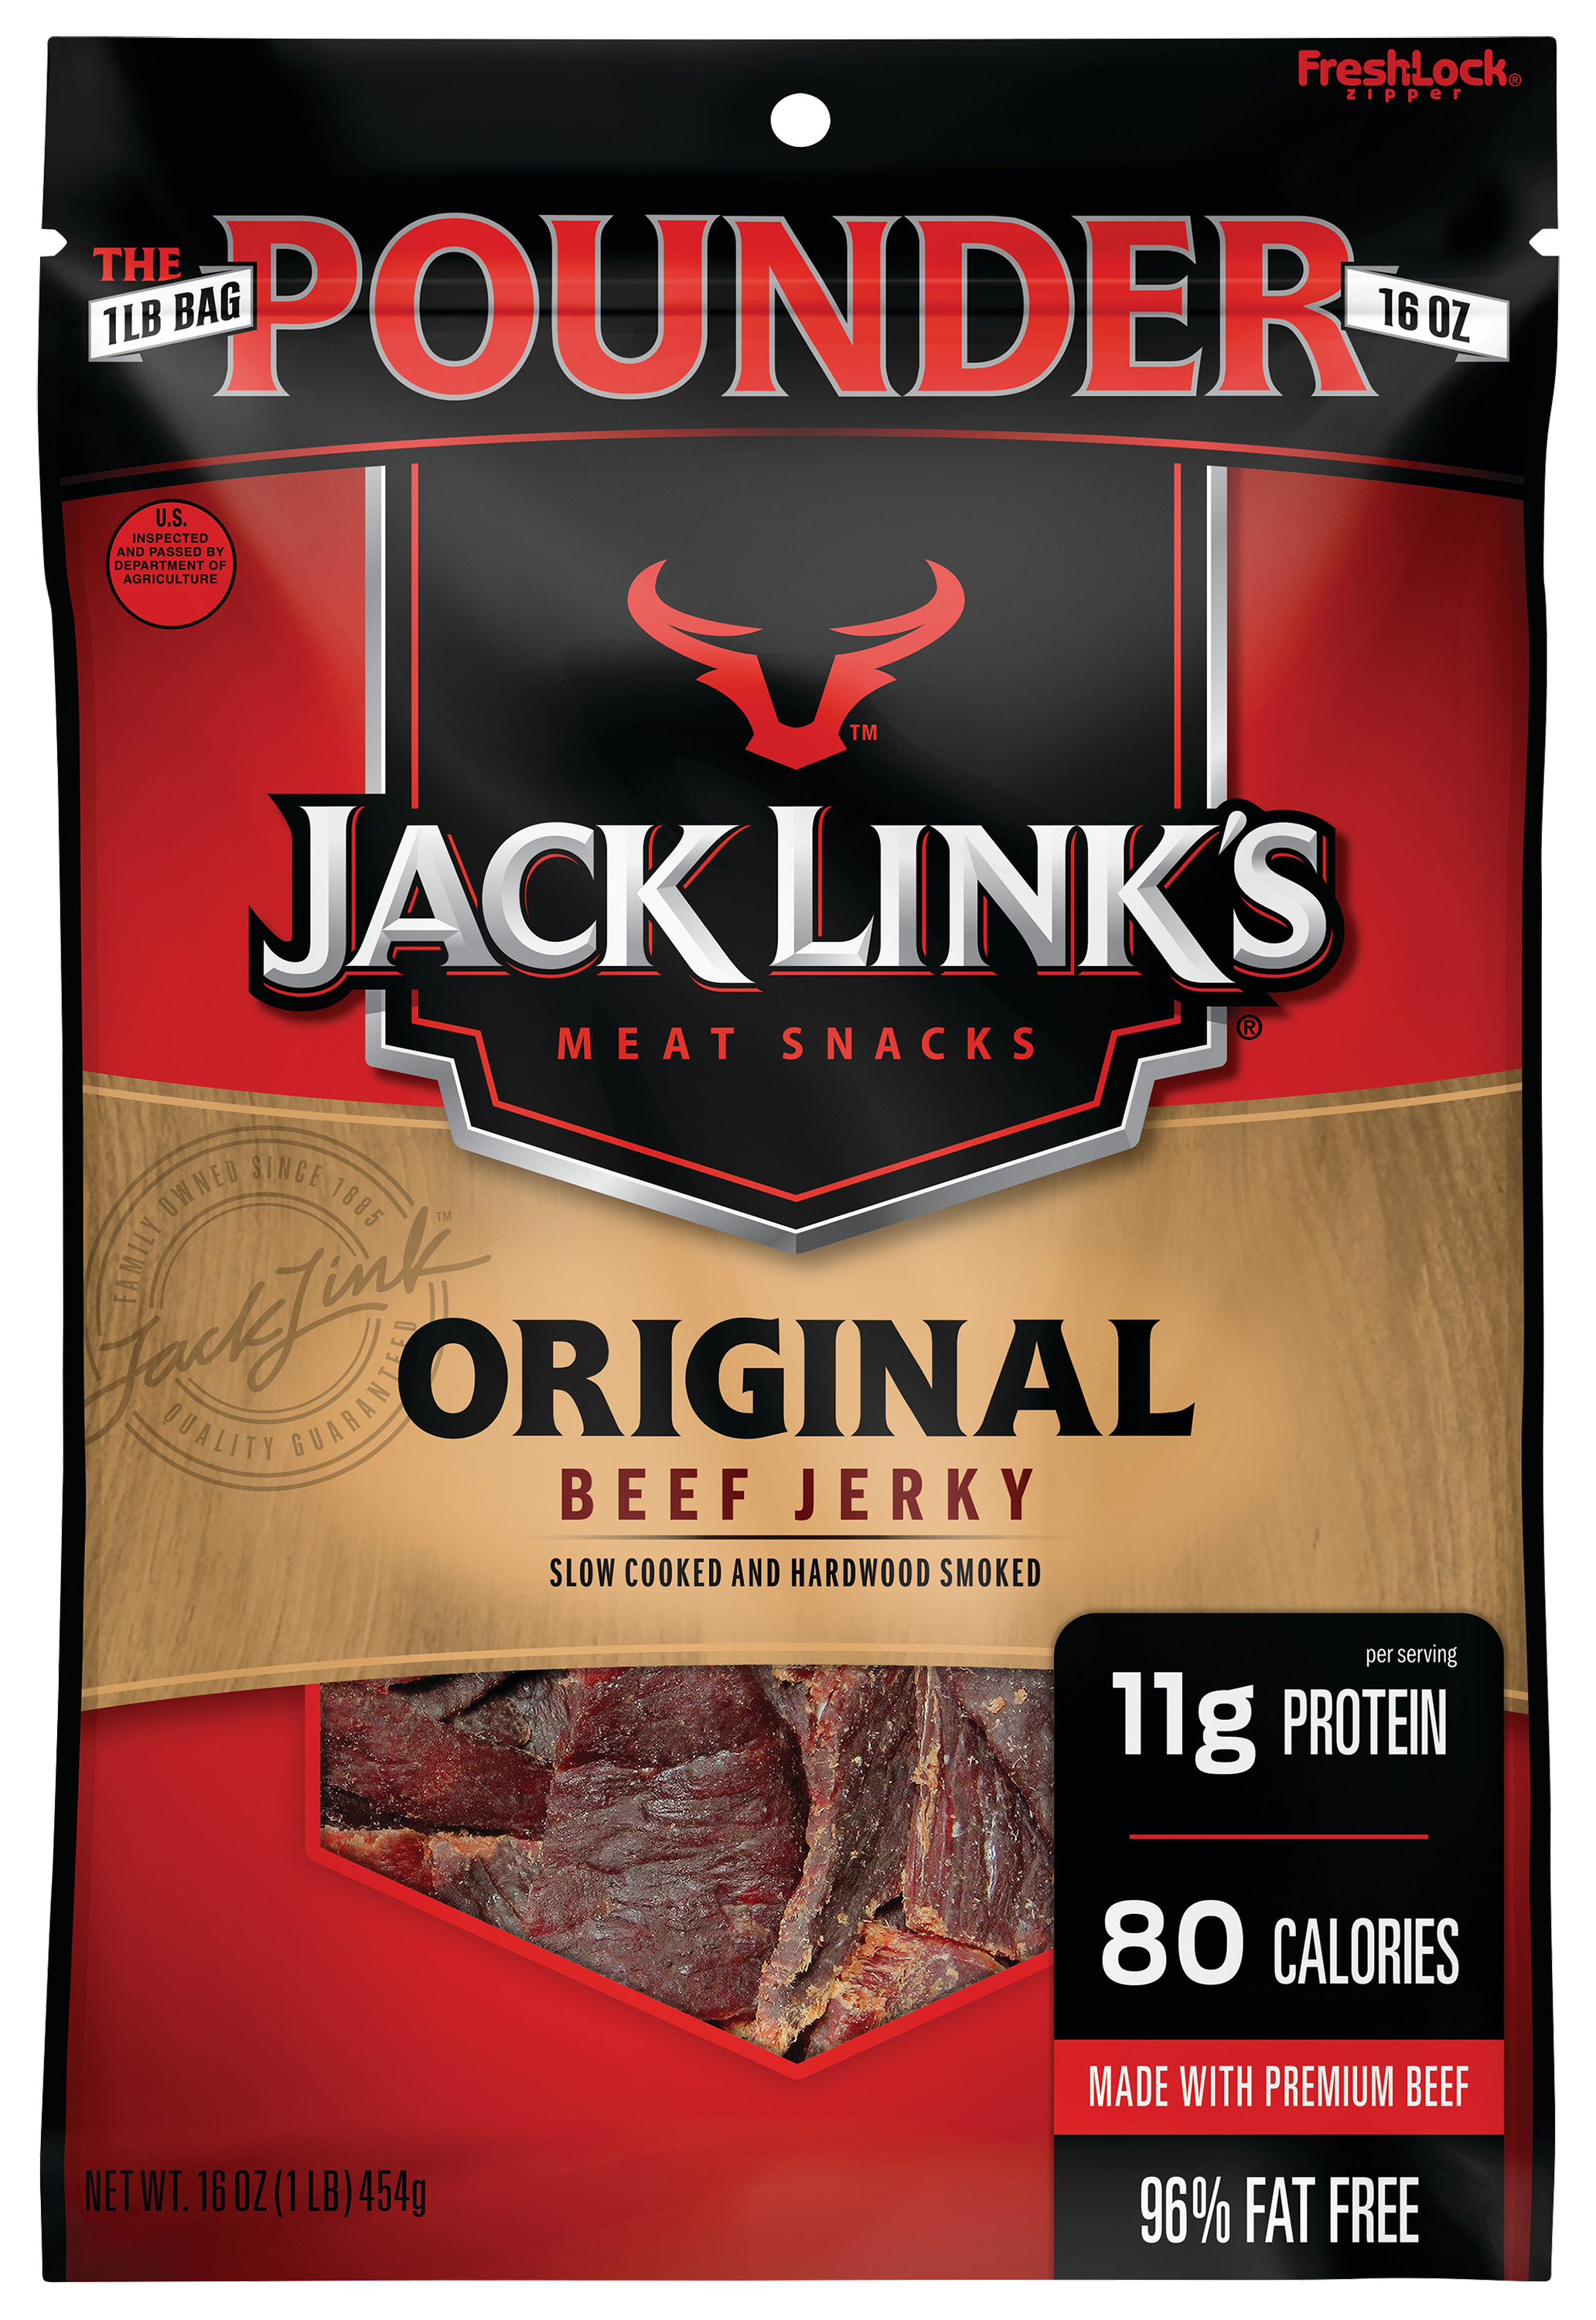 Jack Link's Original Beef Jerky - 16 oz